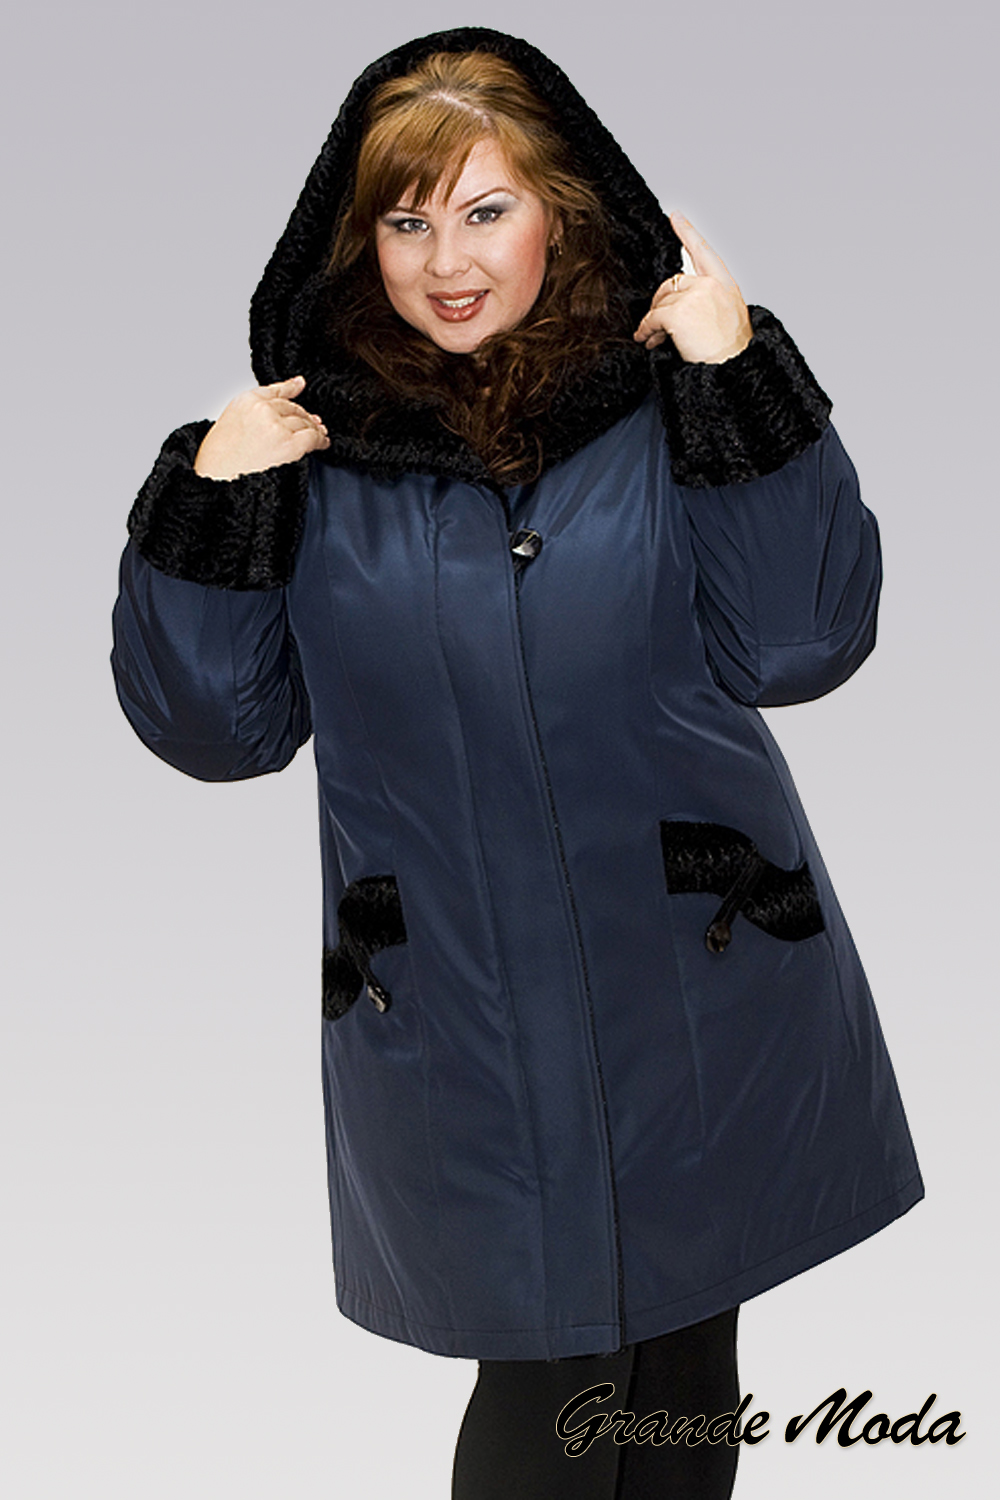 Пальто 58 размера купить. Зимняя куртка женская валберис 60 размер. Куртки женские зимние 64 размер на валберис. Зимняя куртка женская валберис 62 размер. Куртки для полных женщин.